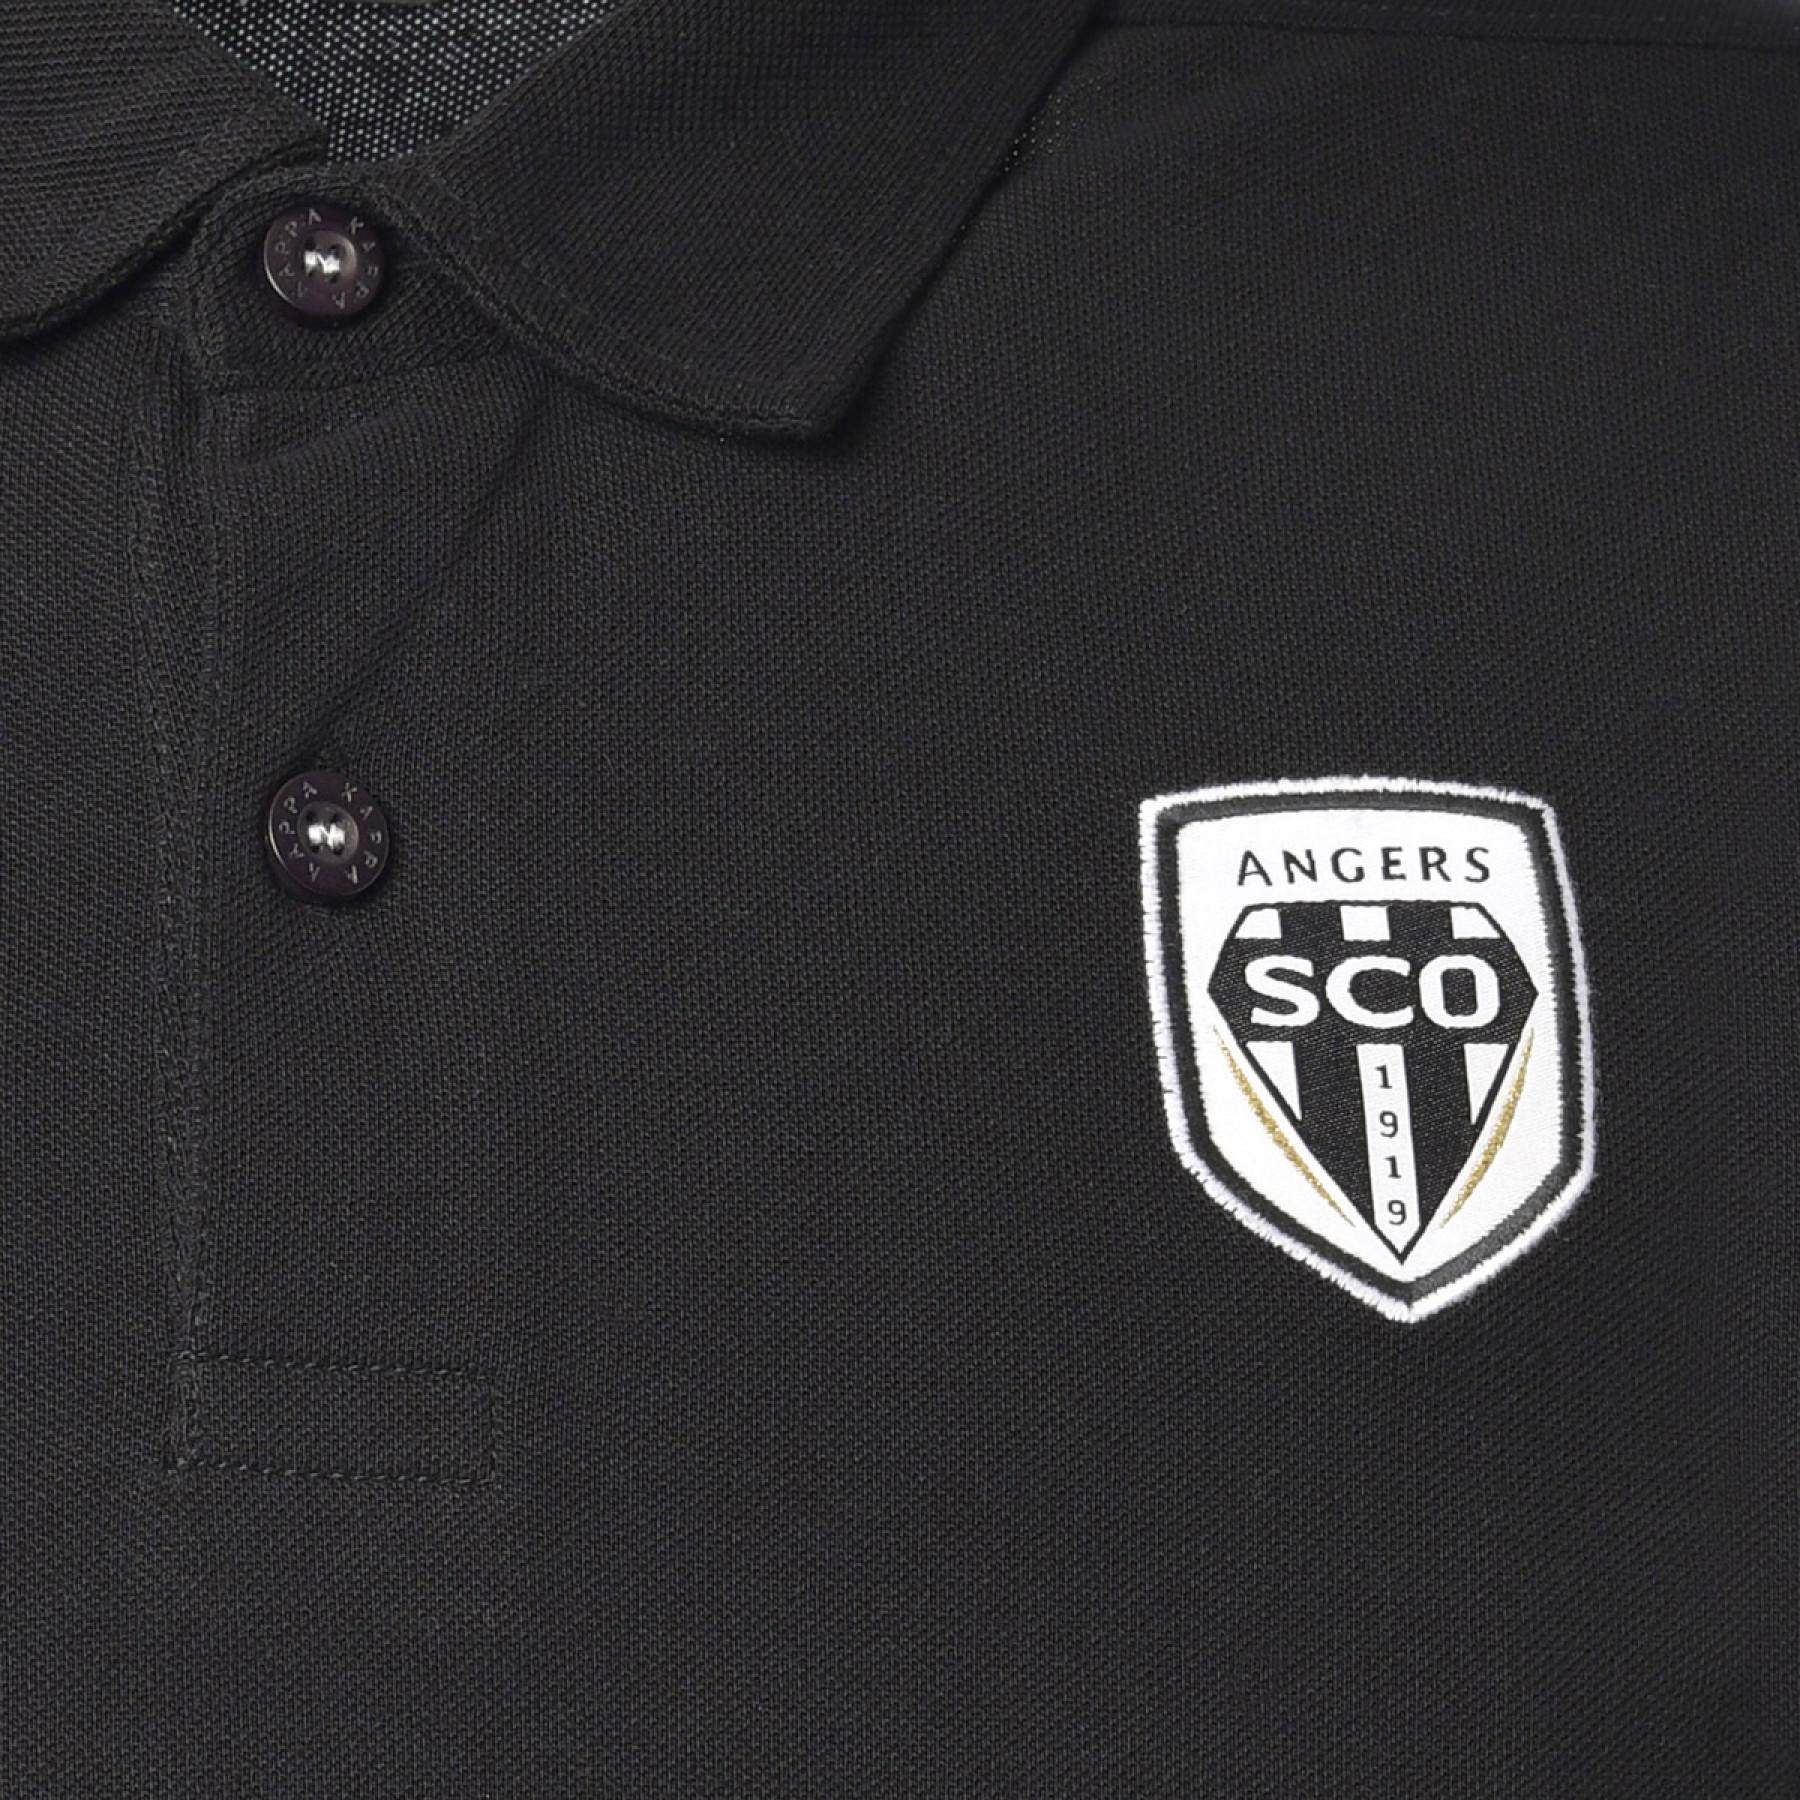 Camisa pólo infantil SCO Angers 2020/21 masaccio